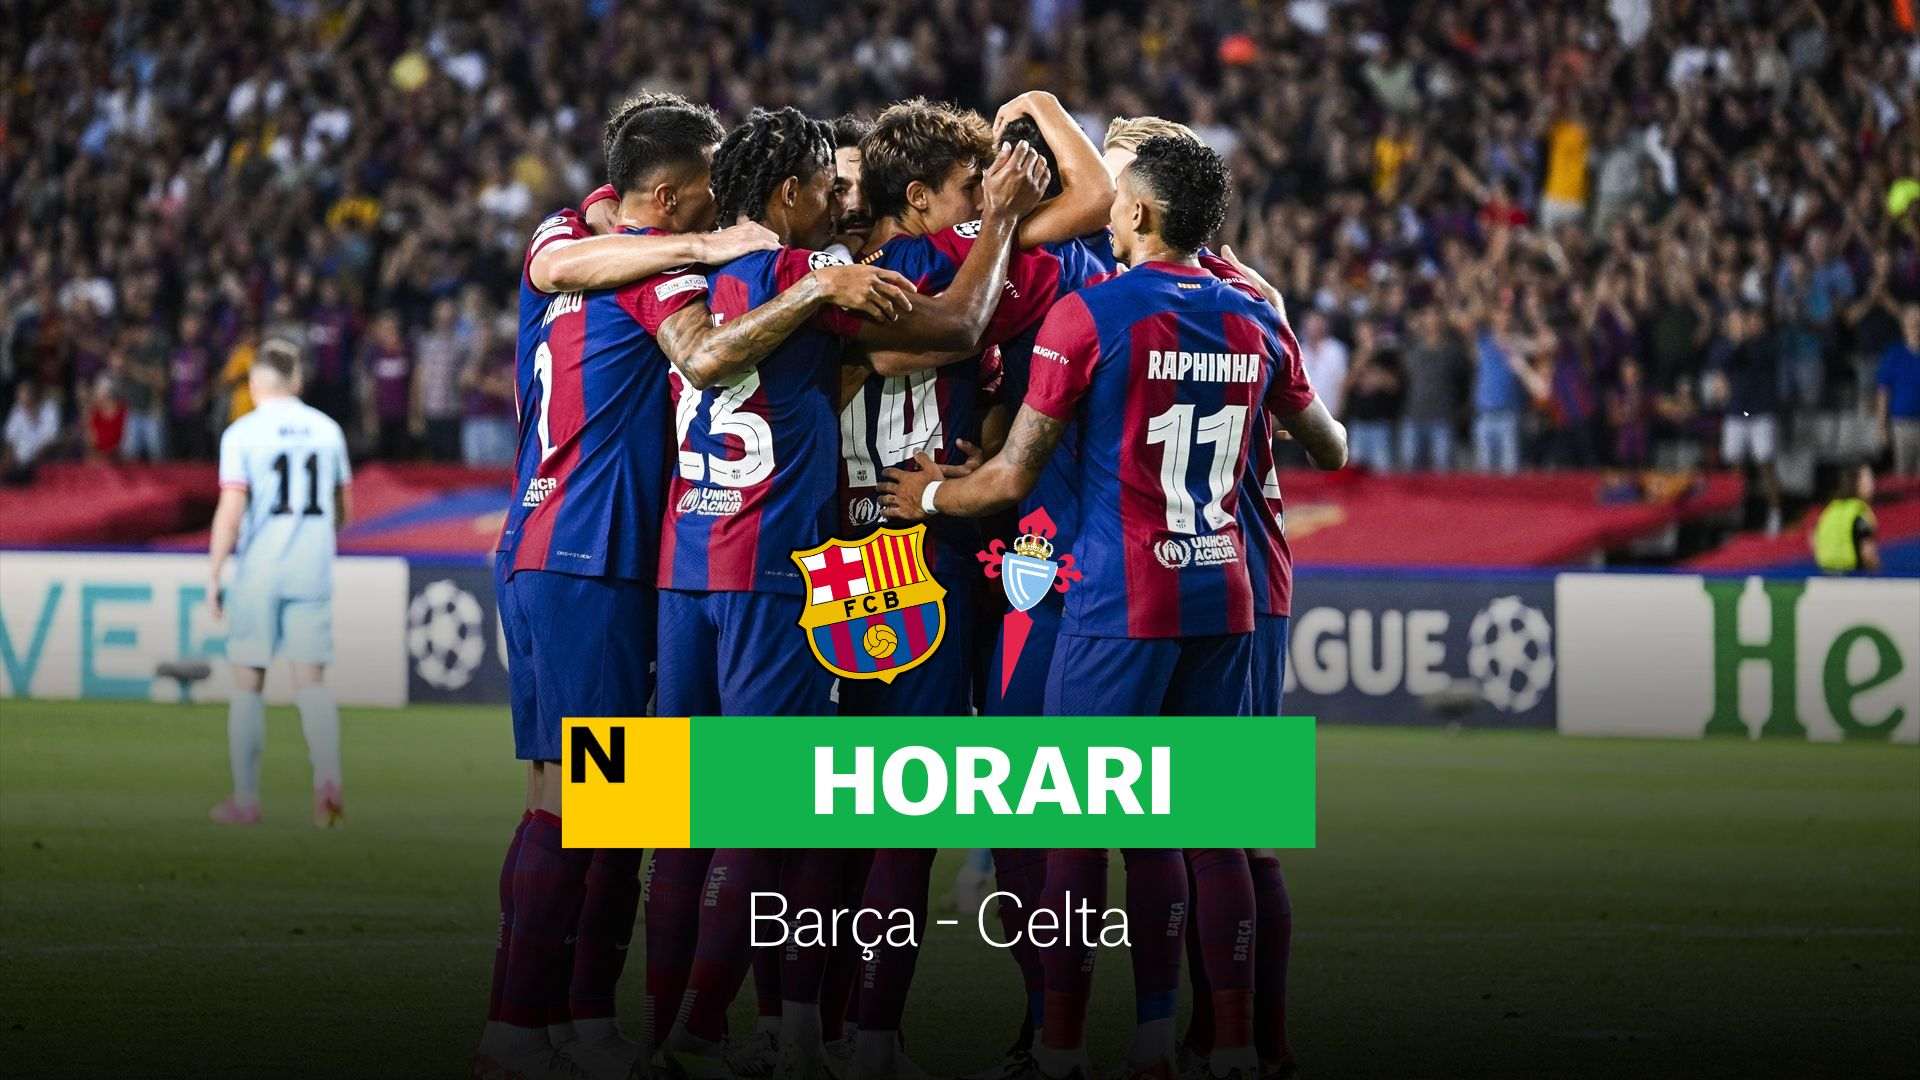 Barcelona - Celta: Alineación, horario y dónde ver por TV hoy el partido de LaLiga